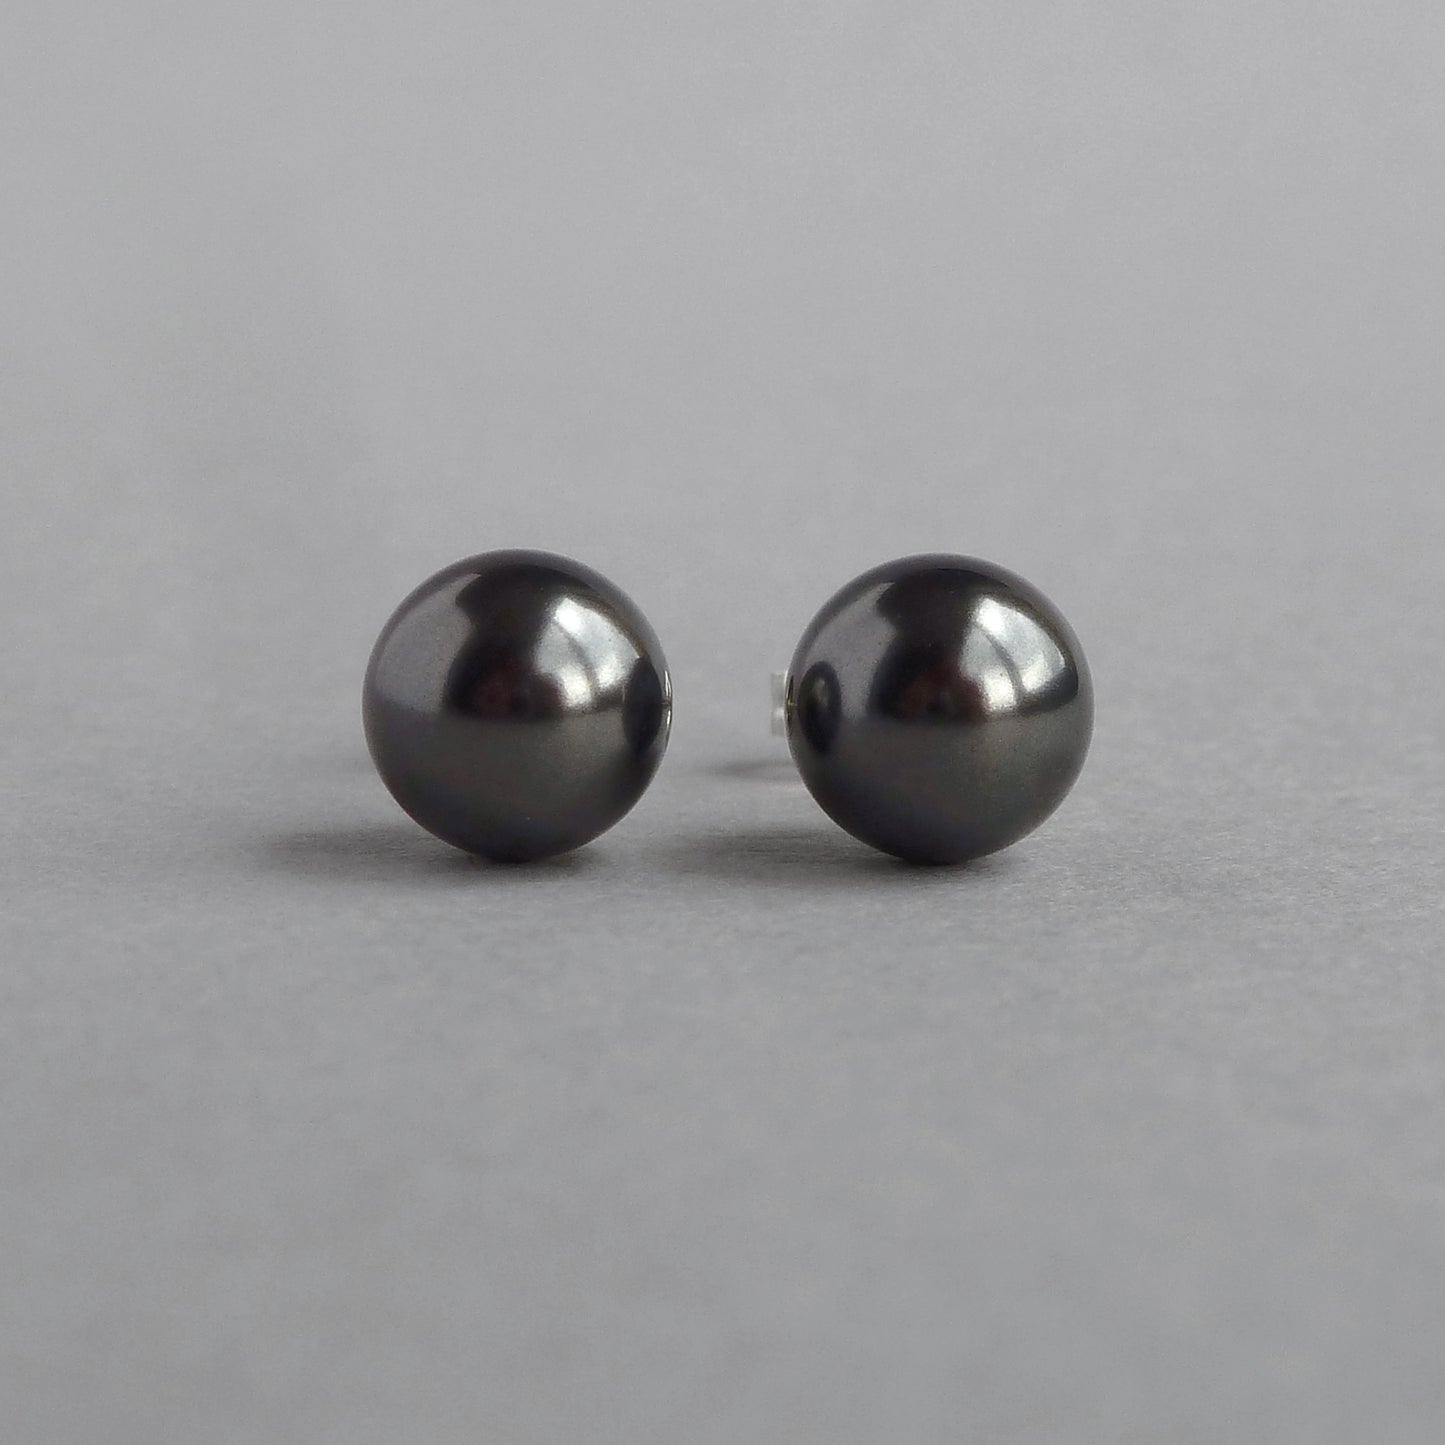 8mm black pearl stud earrings